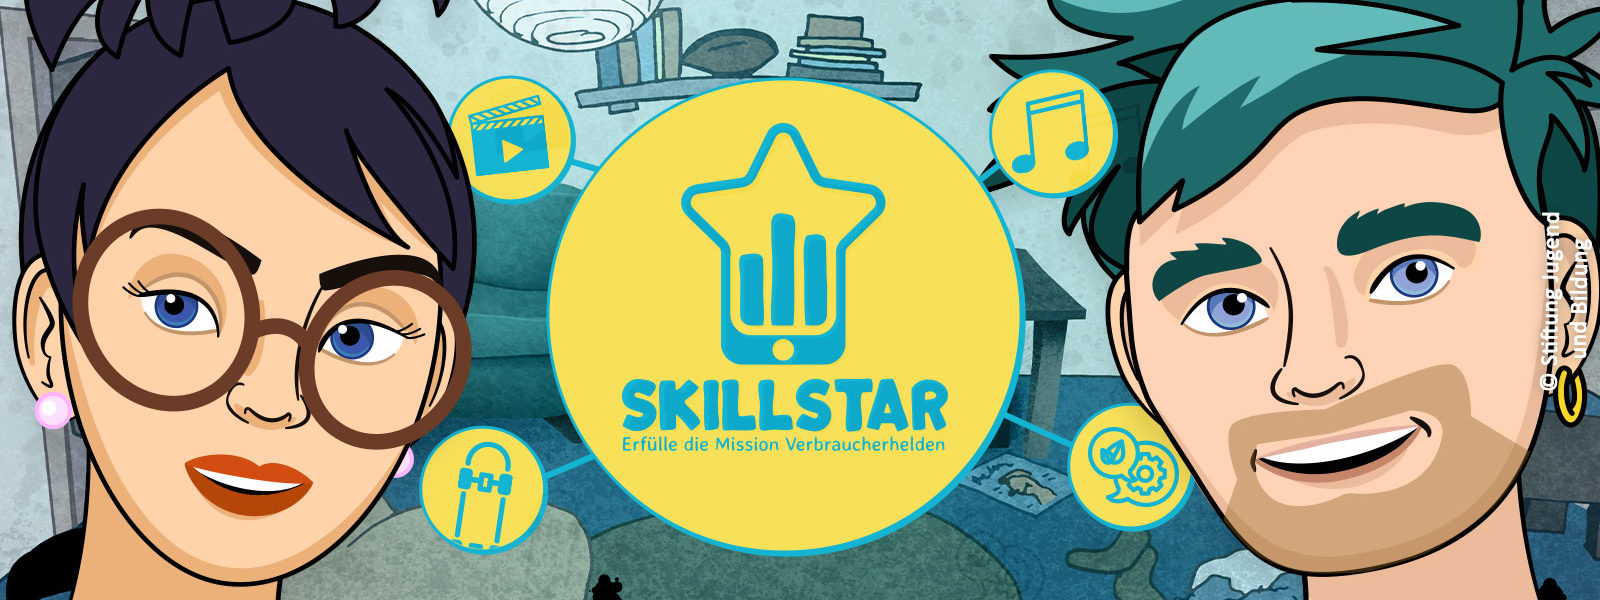 Charaktere der App Skillstar. Foto: Stiftung Jugend und Bildung